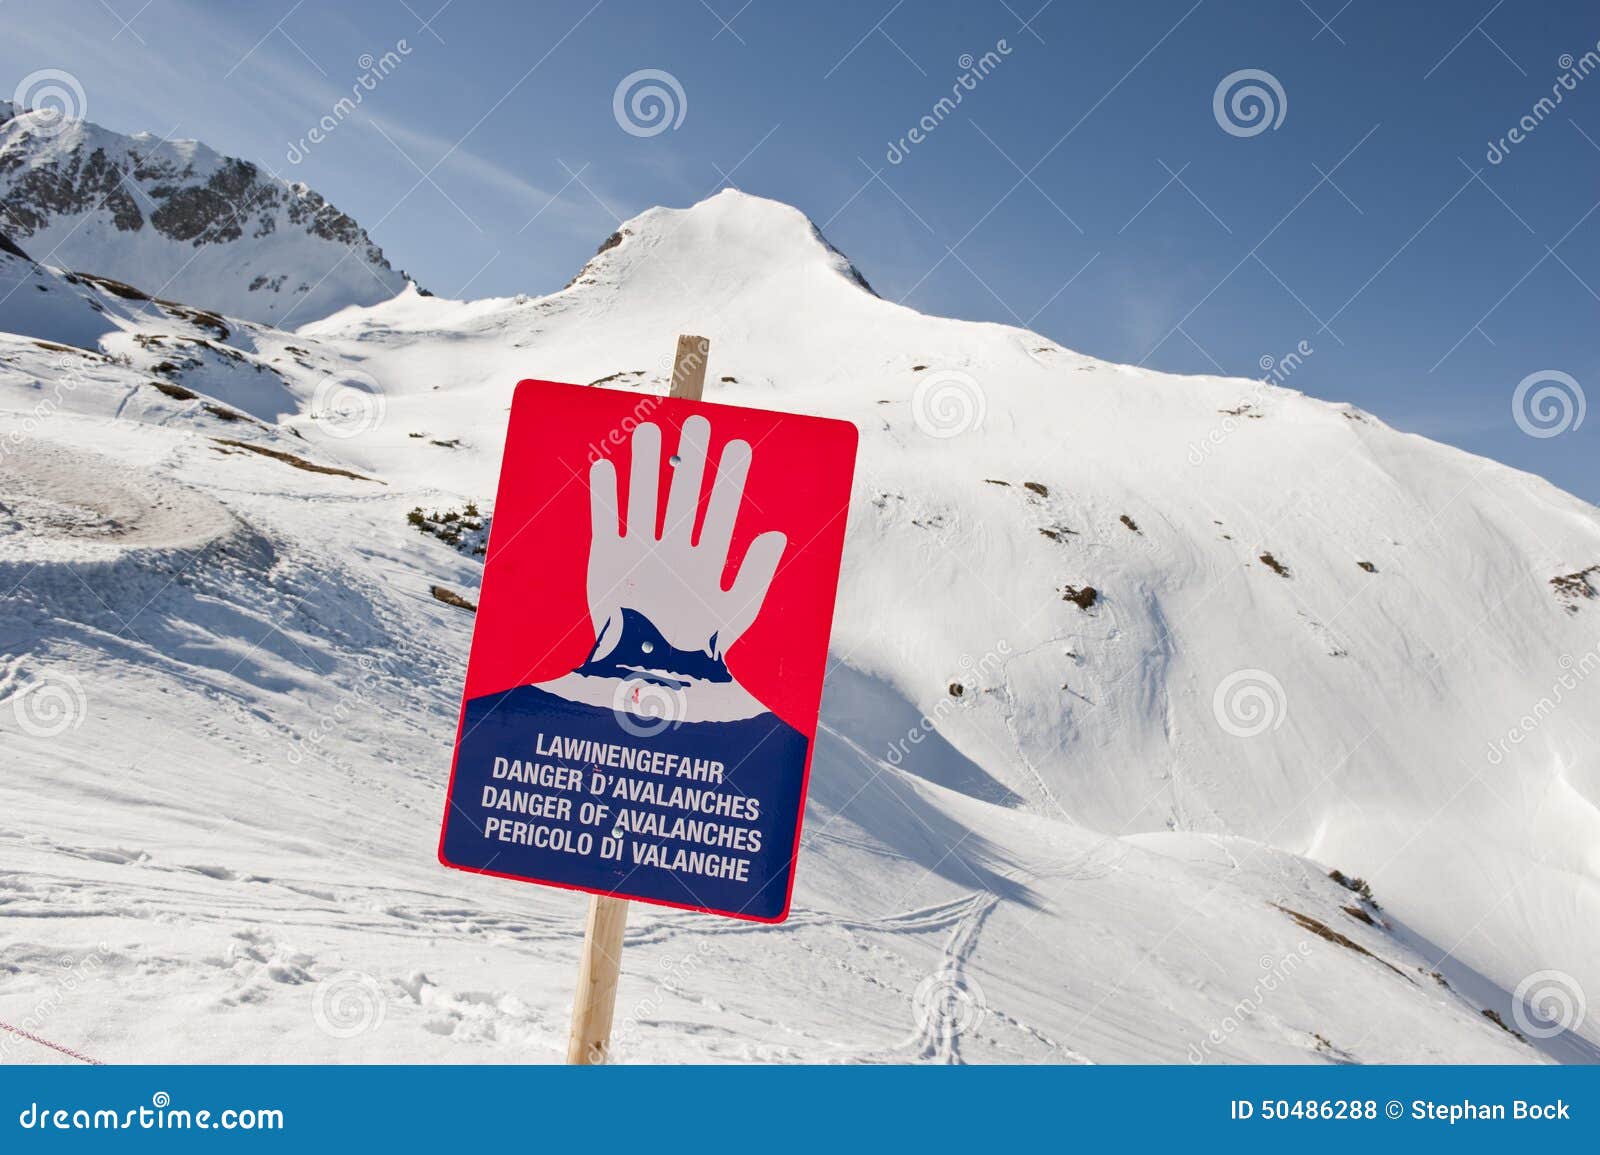 austria, salzburg, altenmarkt-zauchensee, warning sign for danger of avalanche